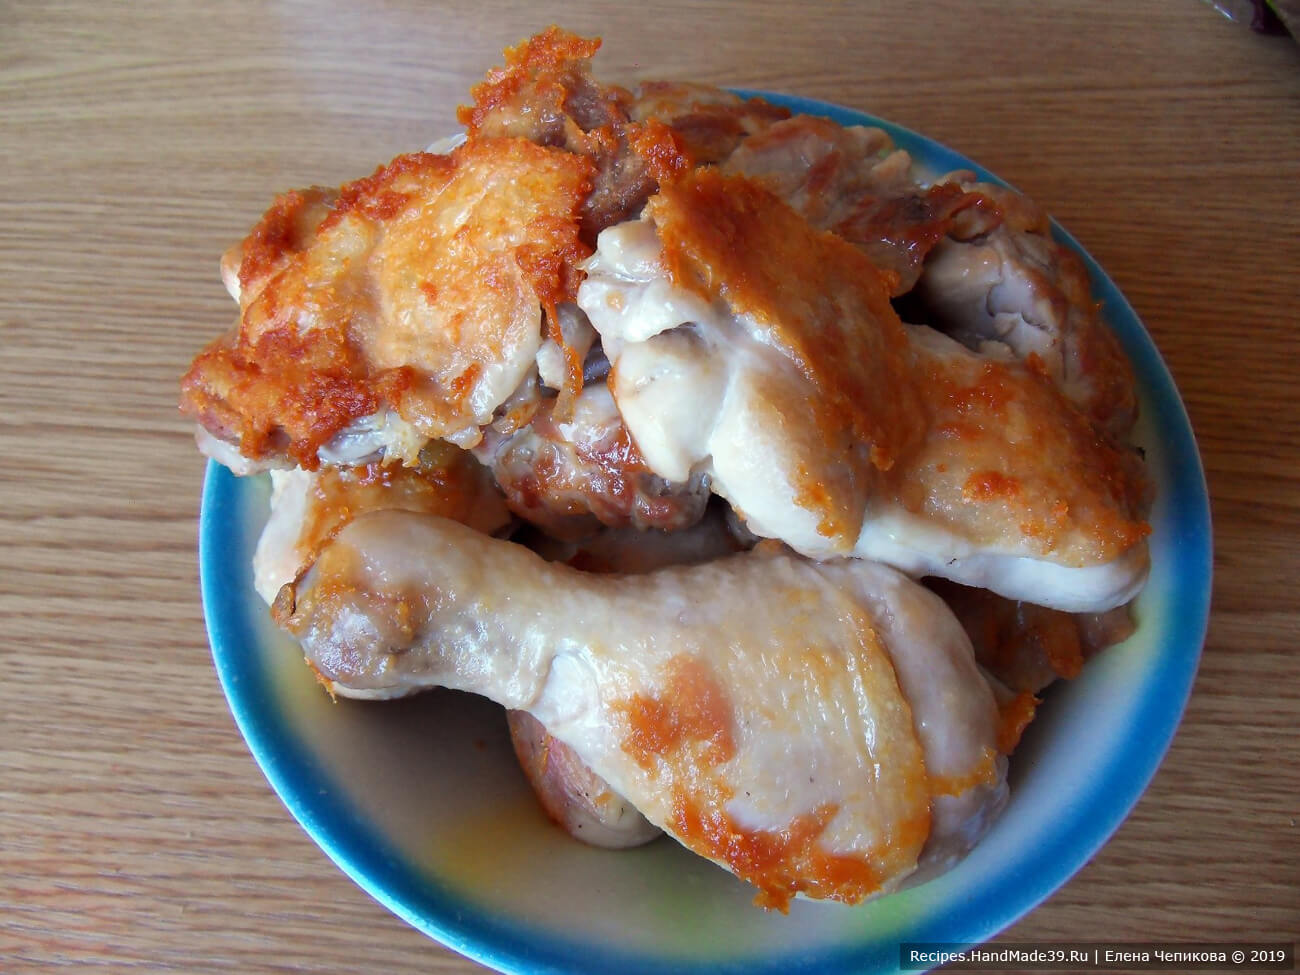 Курицу, разделанную на порционные куски, обжарить на сковороде на растительном масле до золотистого цвета. Специи использовать по вкусу